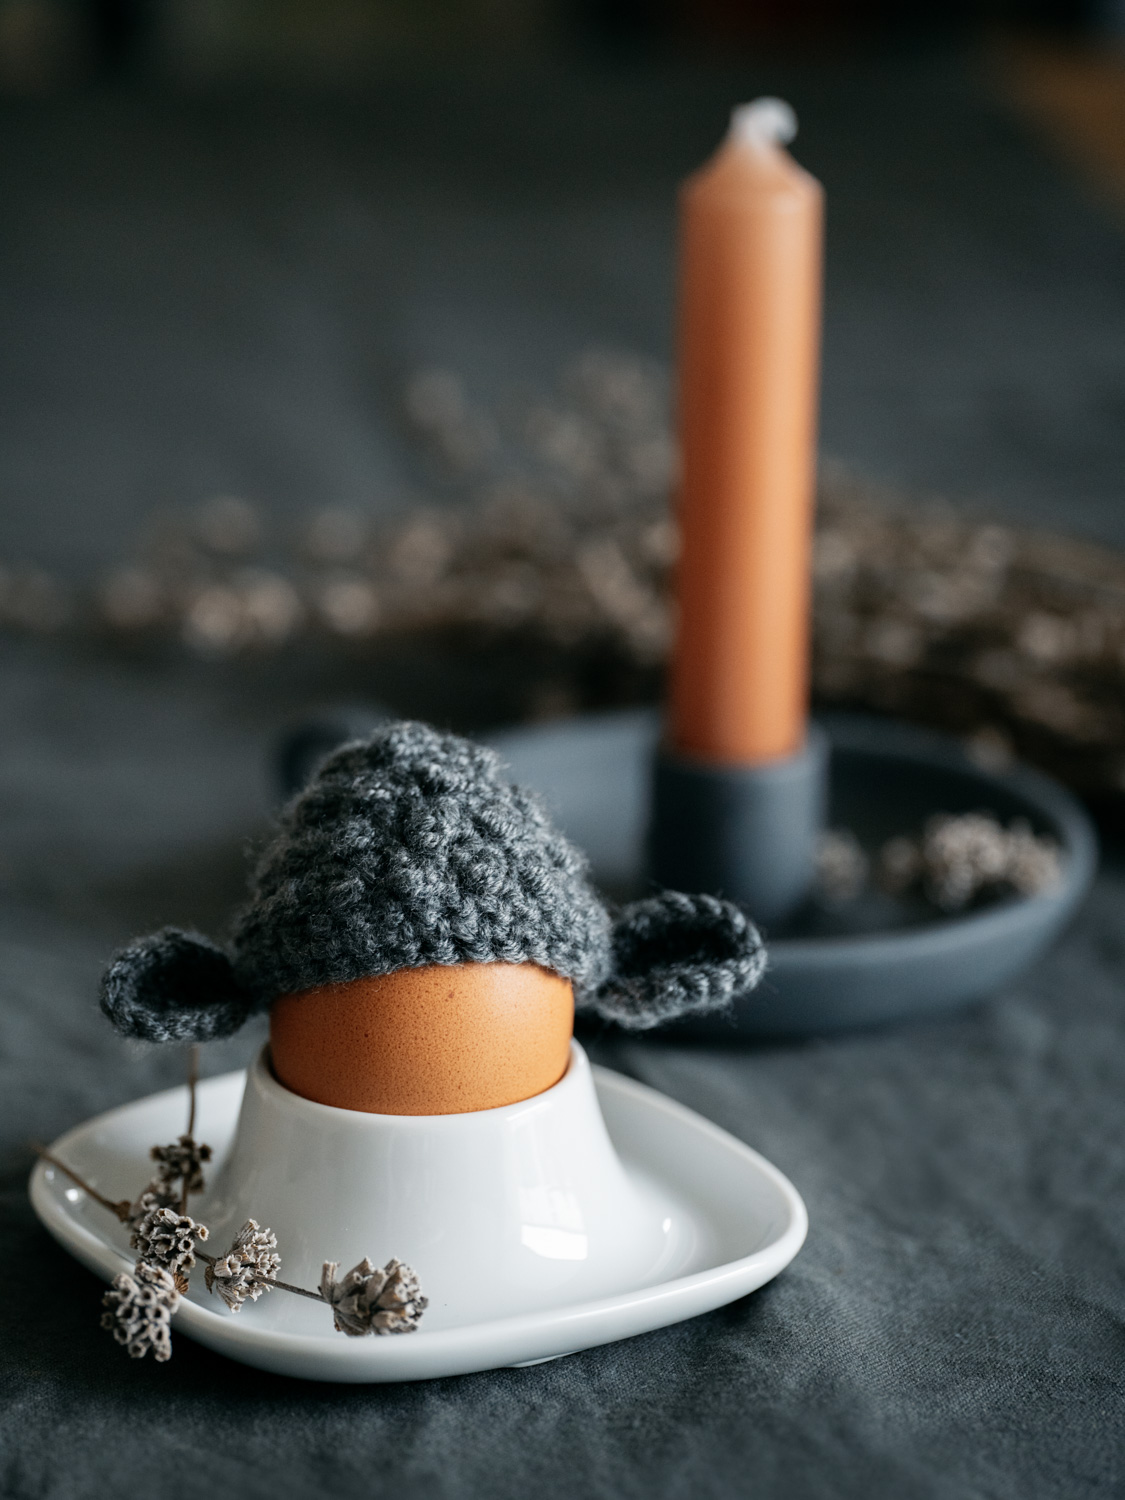 Ostern ist einfach die Zeit fürs neu Dekorieren und tolle DIY’s. Mir kam die Idee, niedliche Lamm-Mützen als Eierwärmer zu häkeln. Die Mützen sind einfach und schnell zu machen. Mit diesem DIY kannst du an Ostern einen außergewöhnlichen Frühstückstisch zaubern! Hier geht’s zur kostenlosen Anleitung. #Ostern #DIY #Lamm #Eierwärmer #häkeln @melaliving